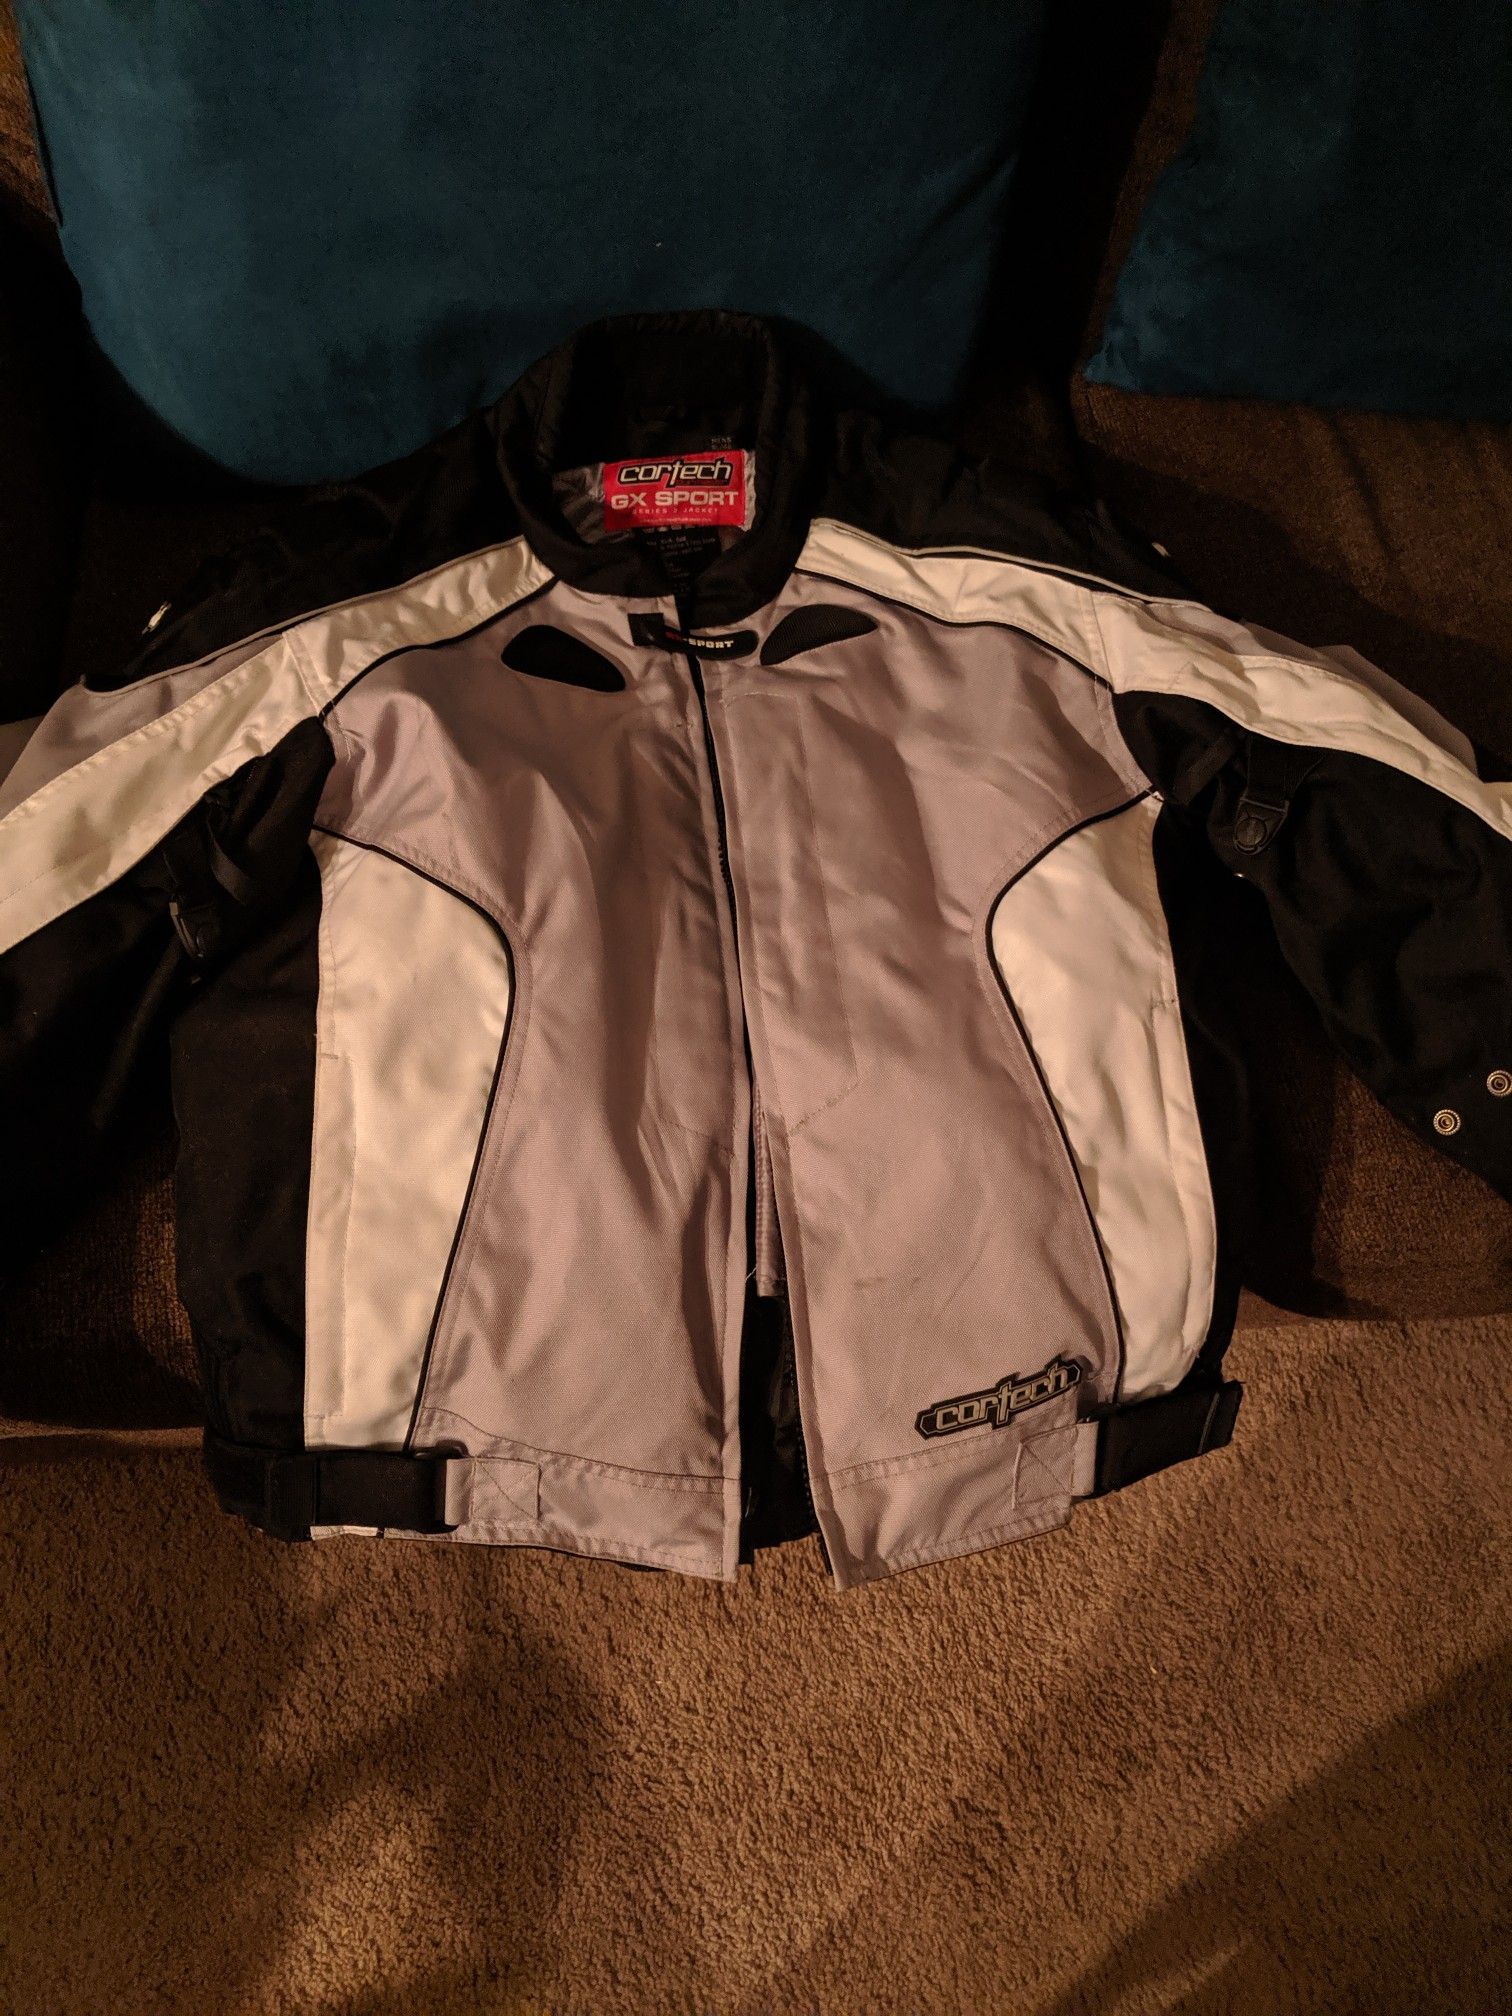 Cortech motorcycle jacket